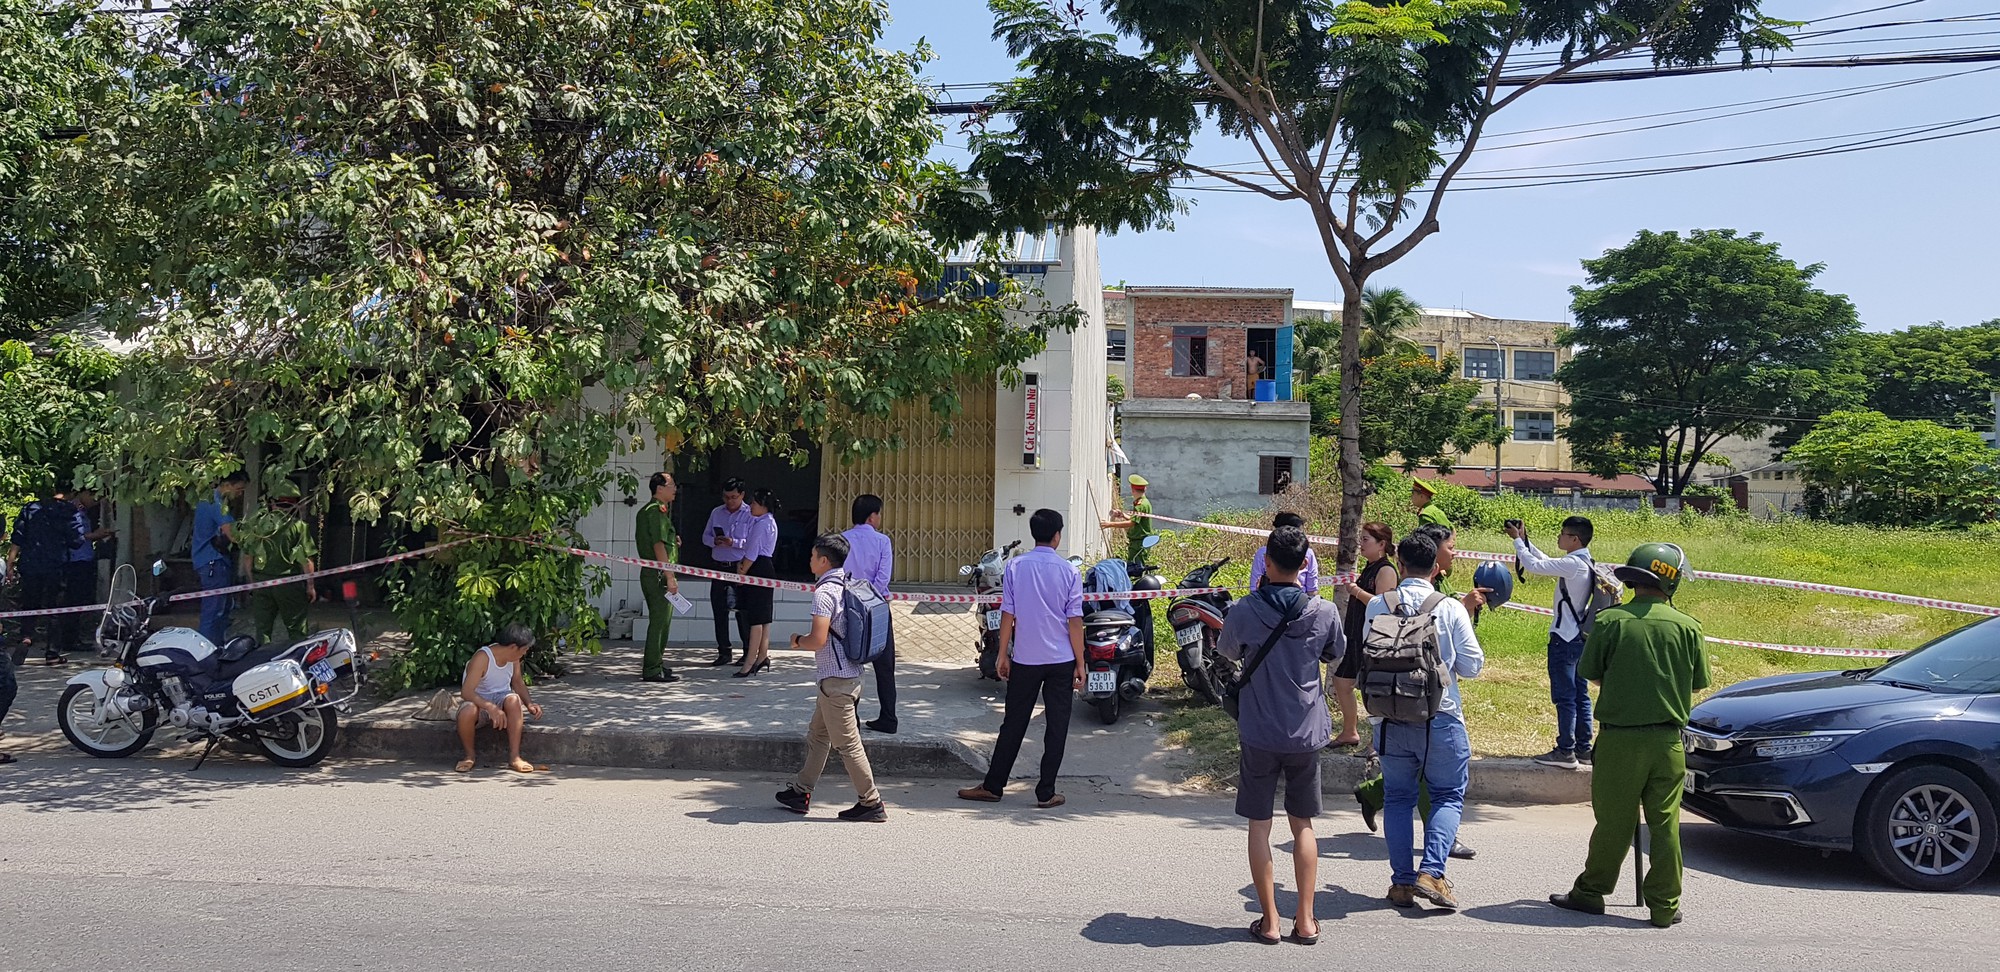 NÓNG: Cướp táo tợn giữa ban ngày ở Đà Nẵng, cụ bà 71 tuổi tử vong, cô gái trẻ nguy kịch-1